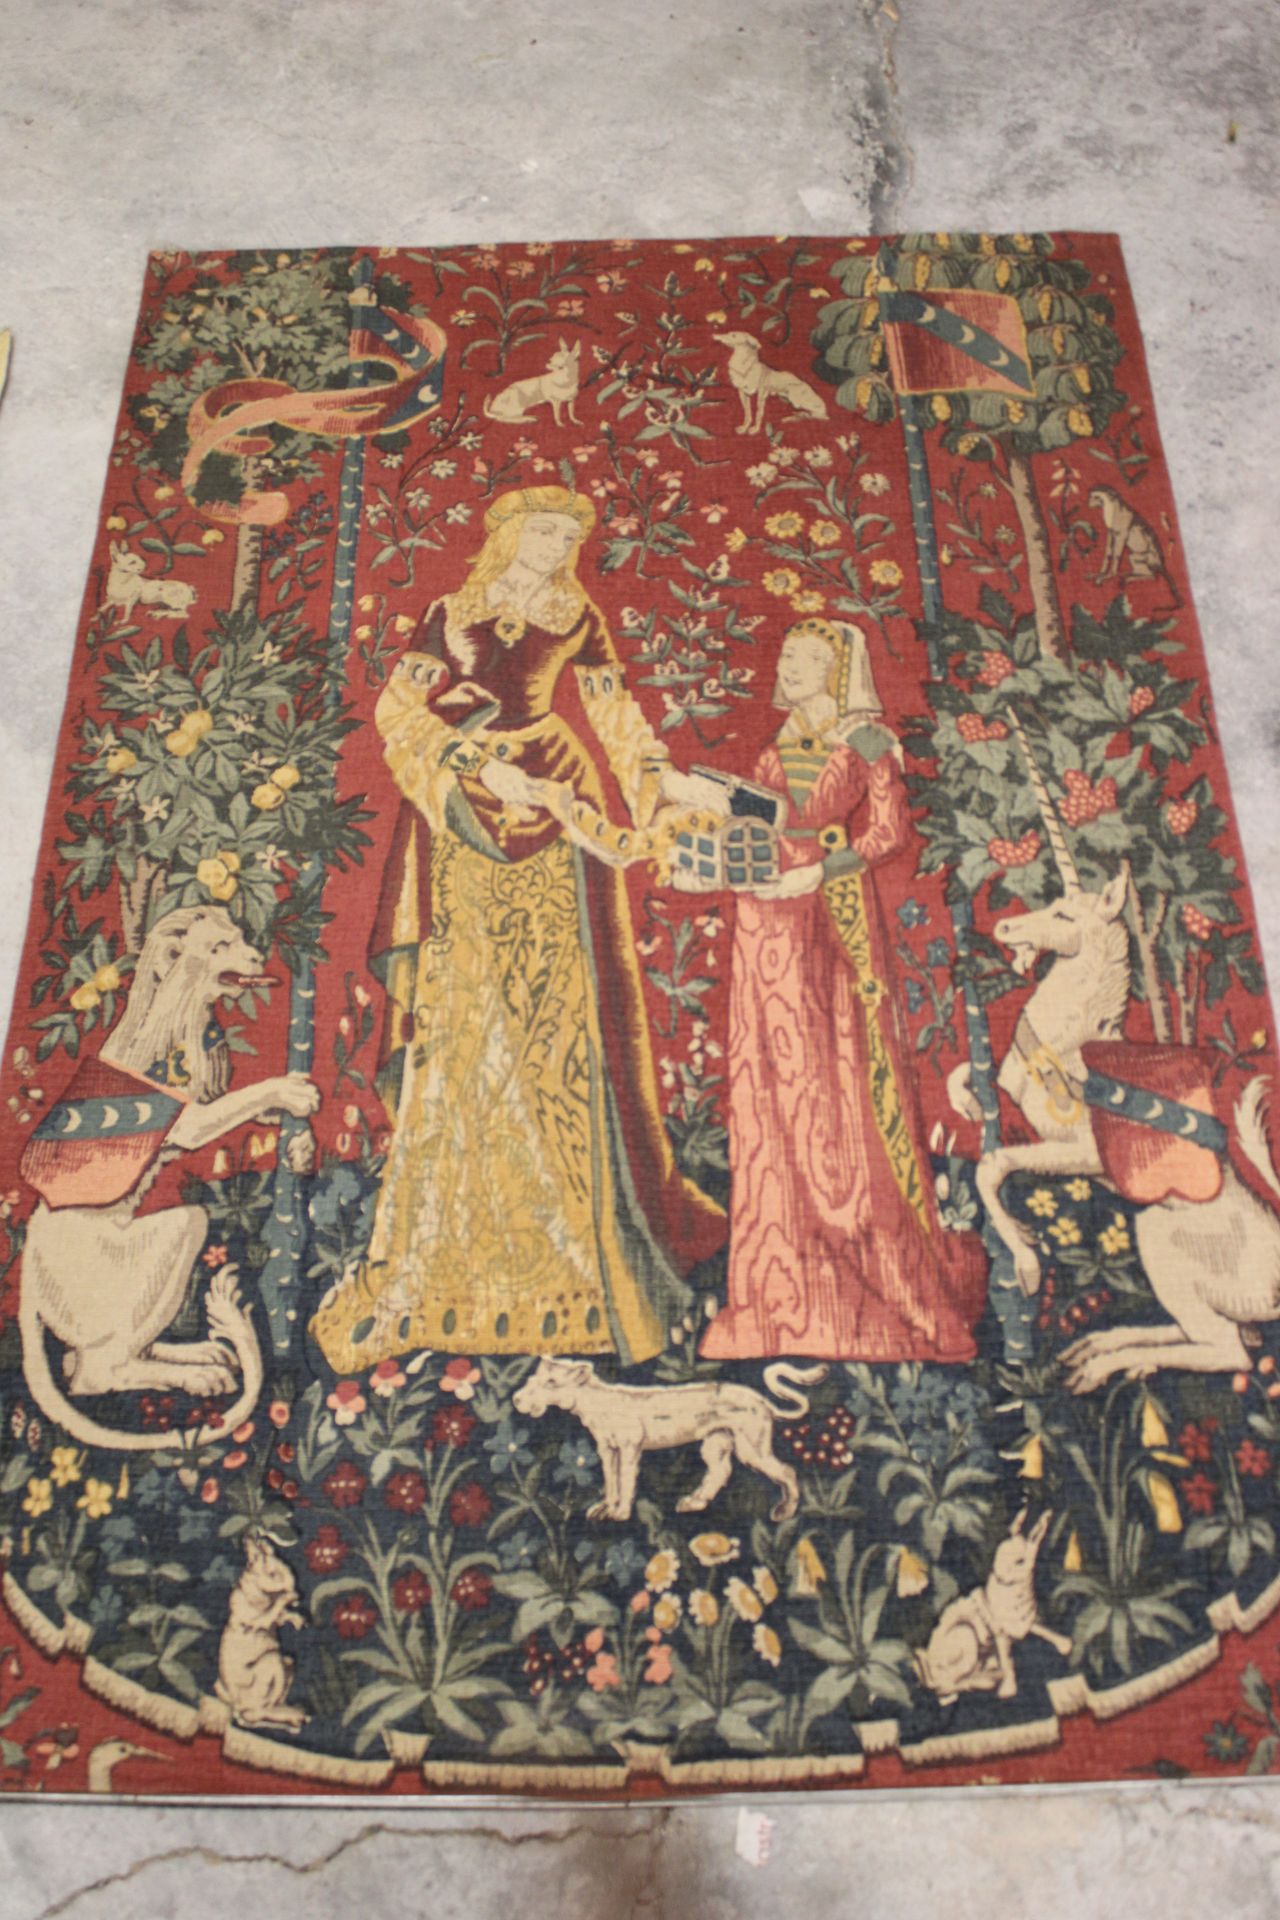 Null 
Wandteppich "Frau mit Einhorn", Kopie, 130x190